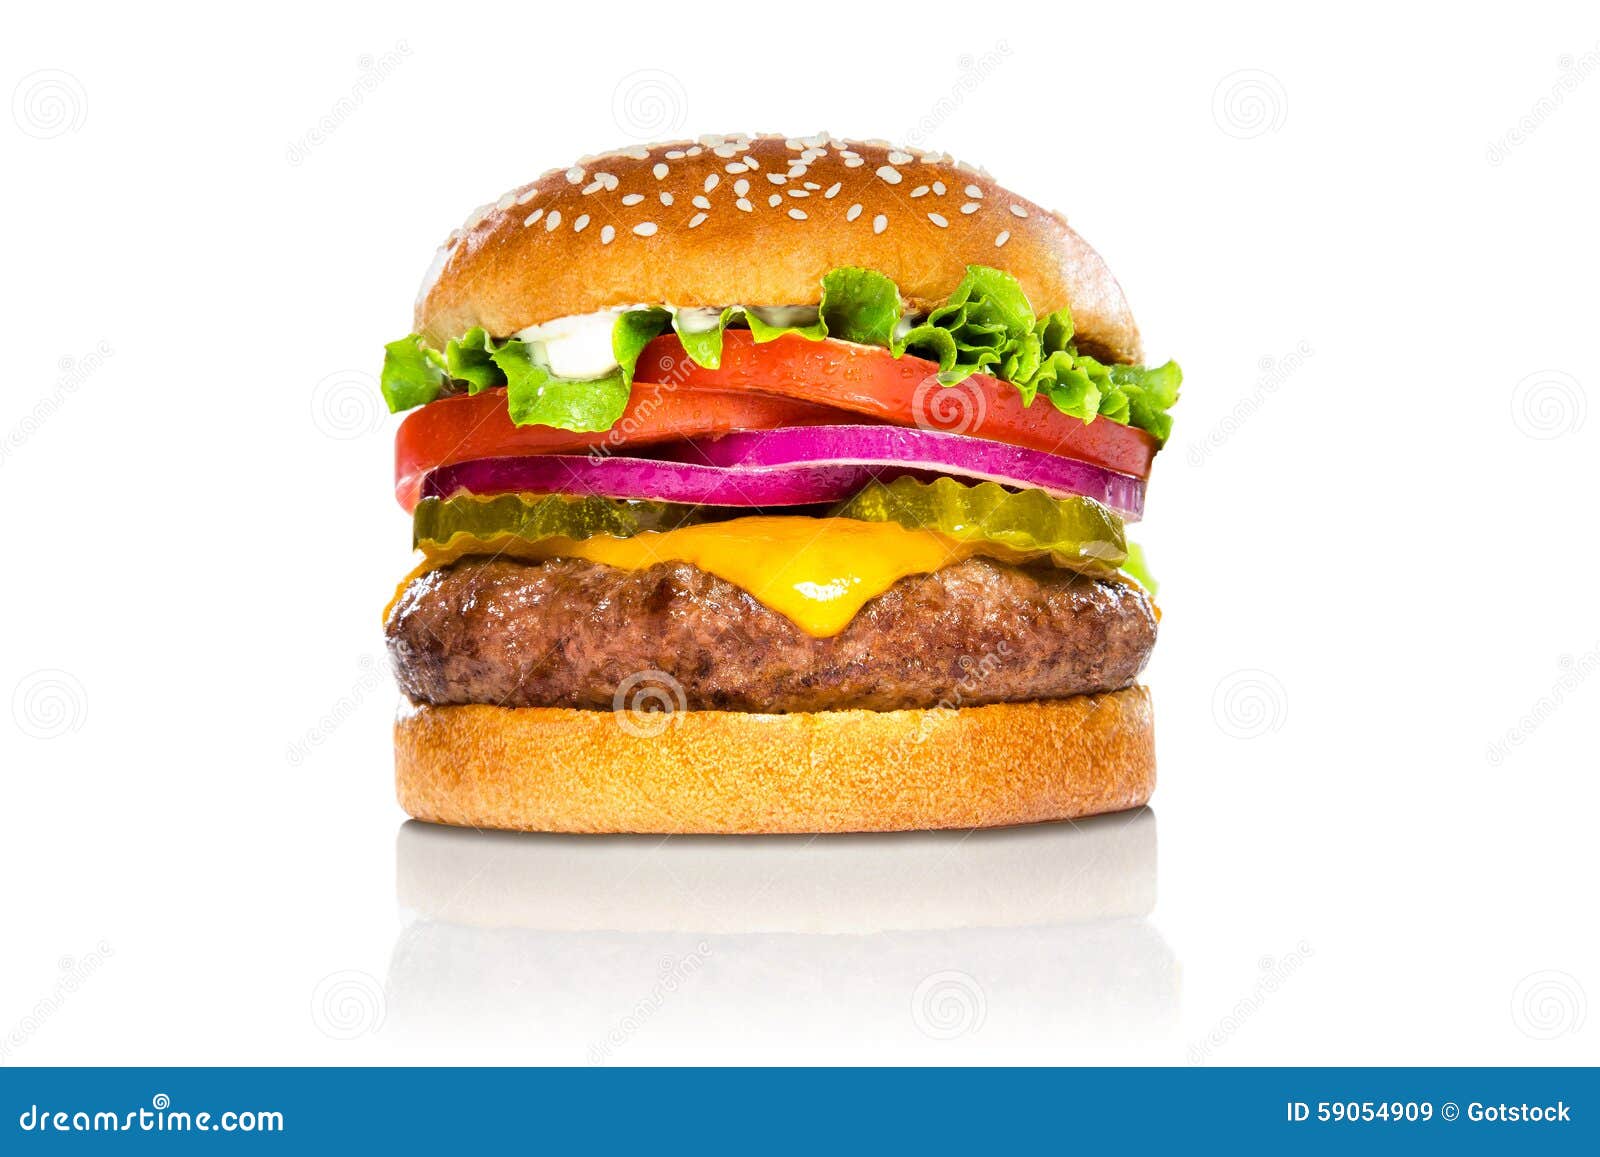 De perfecte Amerikaanse die cheeseburger van de hamburger klassieke hamburger bij de witte bezinning wordt geïsoleerd. De reuze perfecte hamburger grote massieve dikke klassieke Amerikaanse cheeseburger isoleerde hamburger met extra de tomatengroenten in het zuur van de bovenste laagjessla op een sesamzaadbroodje